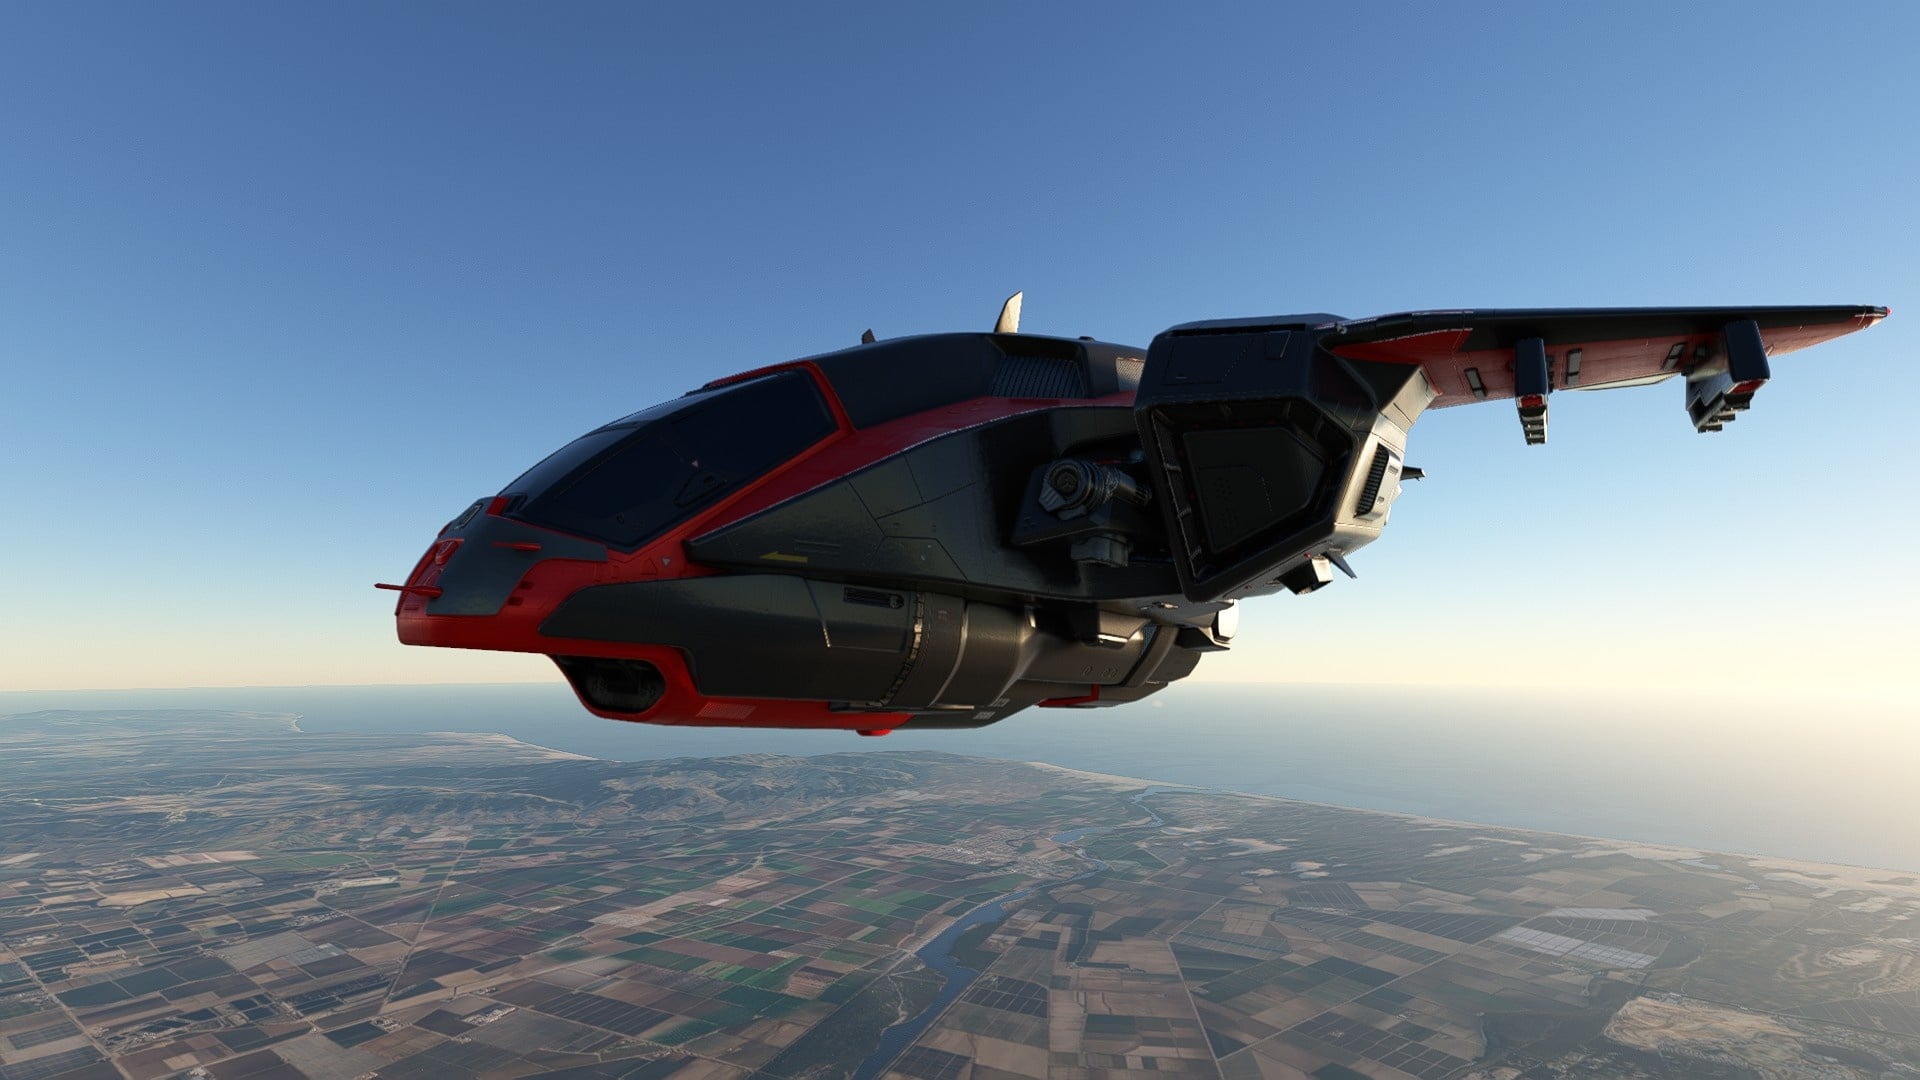  (Le Misriah Armory D77 TC Pelican est issu de la série Halo de Microsoft et est depuis peu disponible en plusieurs couleurs en tant que DLC gratuit sur le marché de Flight Simulator)